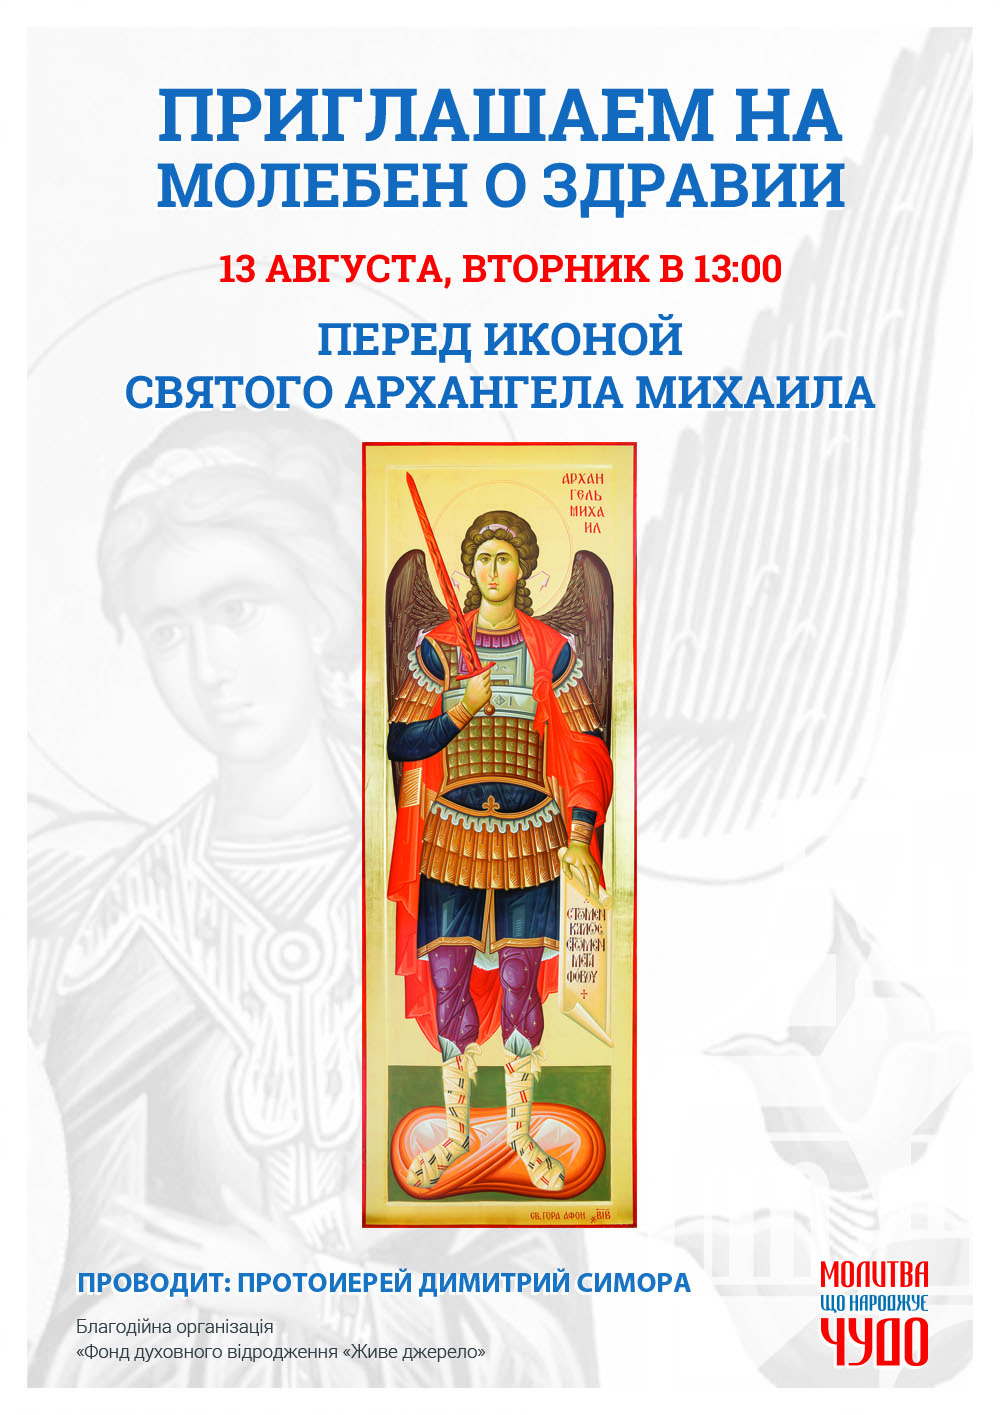 Молебен о здравии в Киеве. Чудотворная икона Святого Архангела Михаил